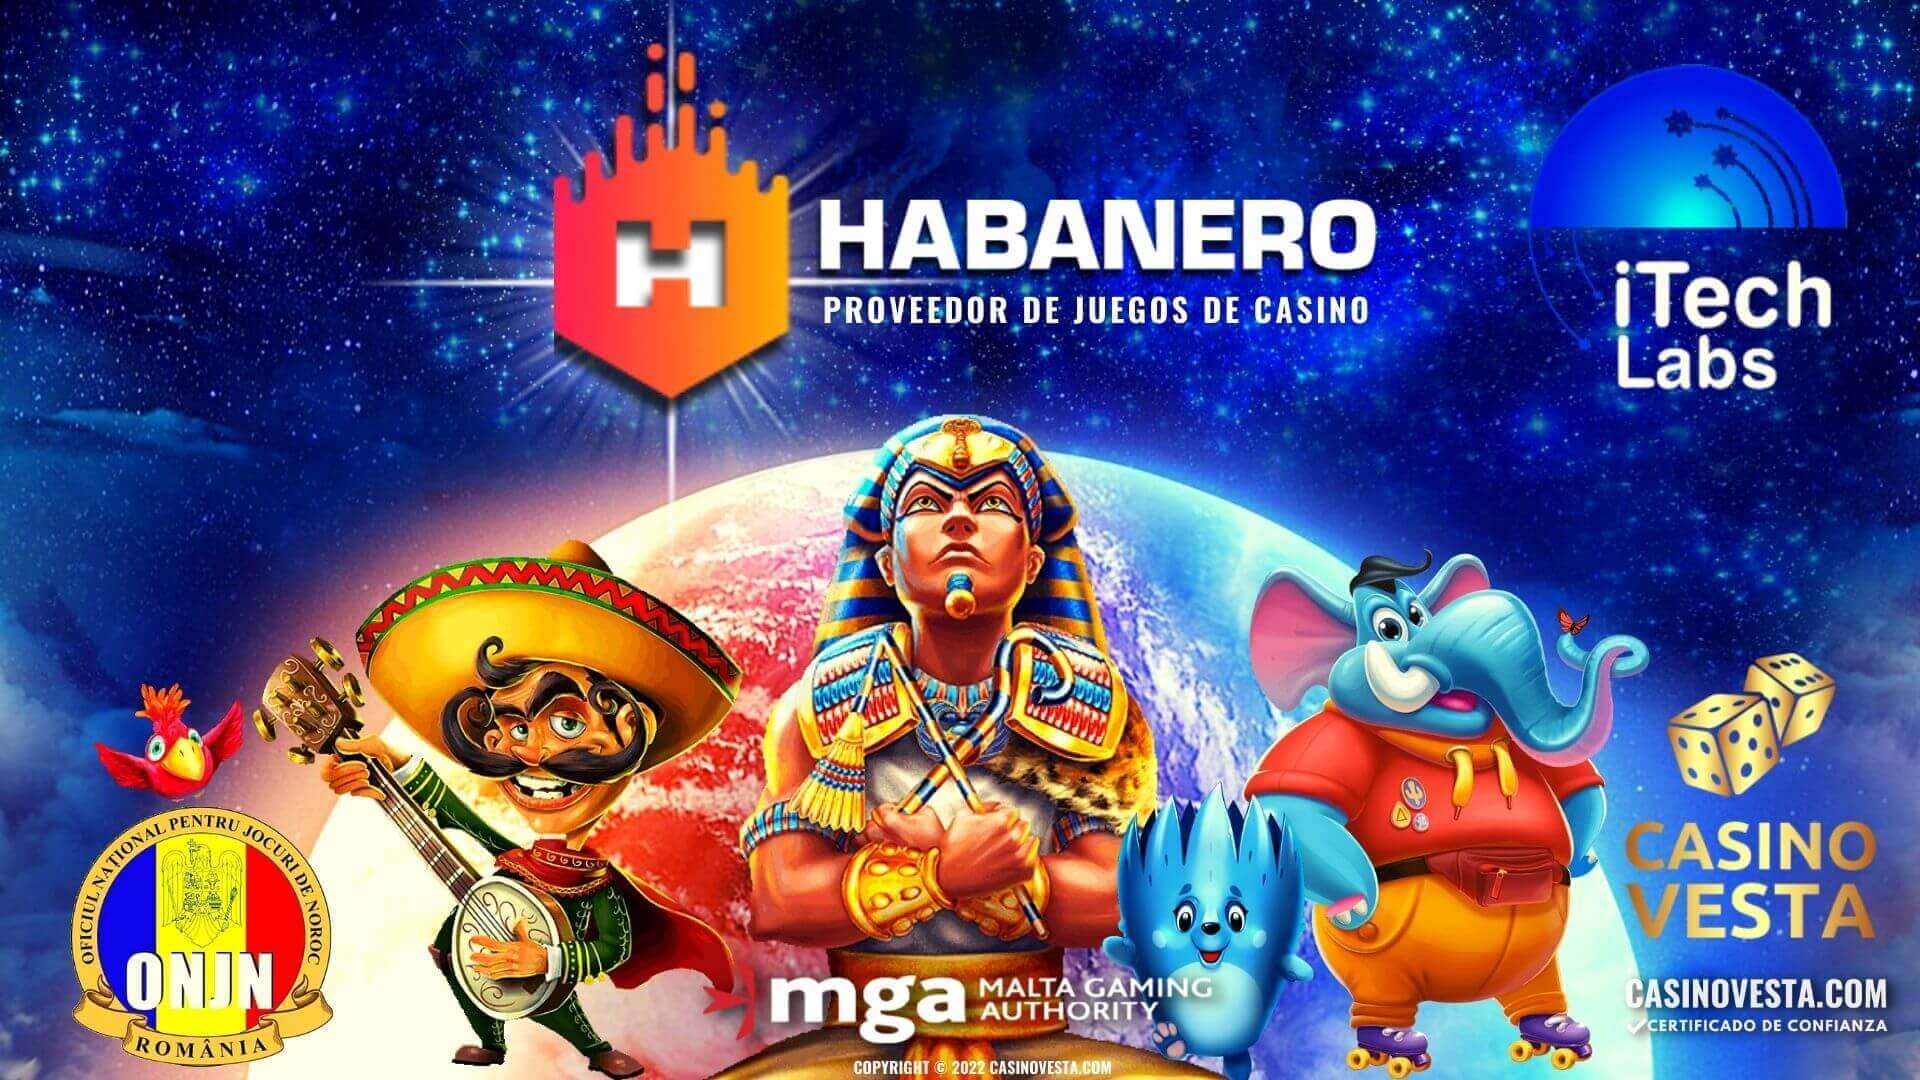 Proveedor de Juegos de Casino Habanero Systems